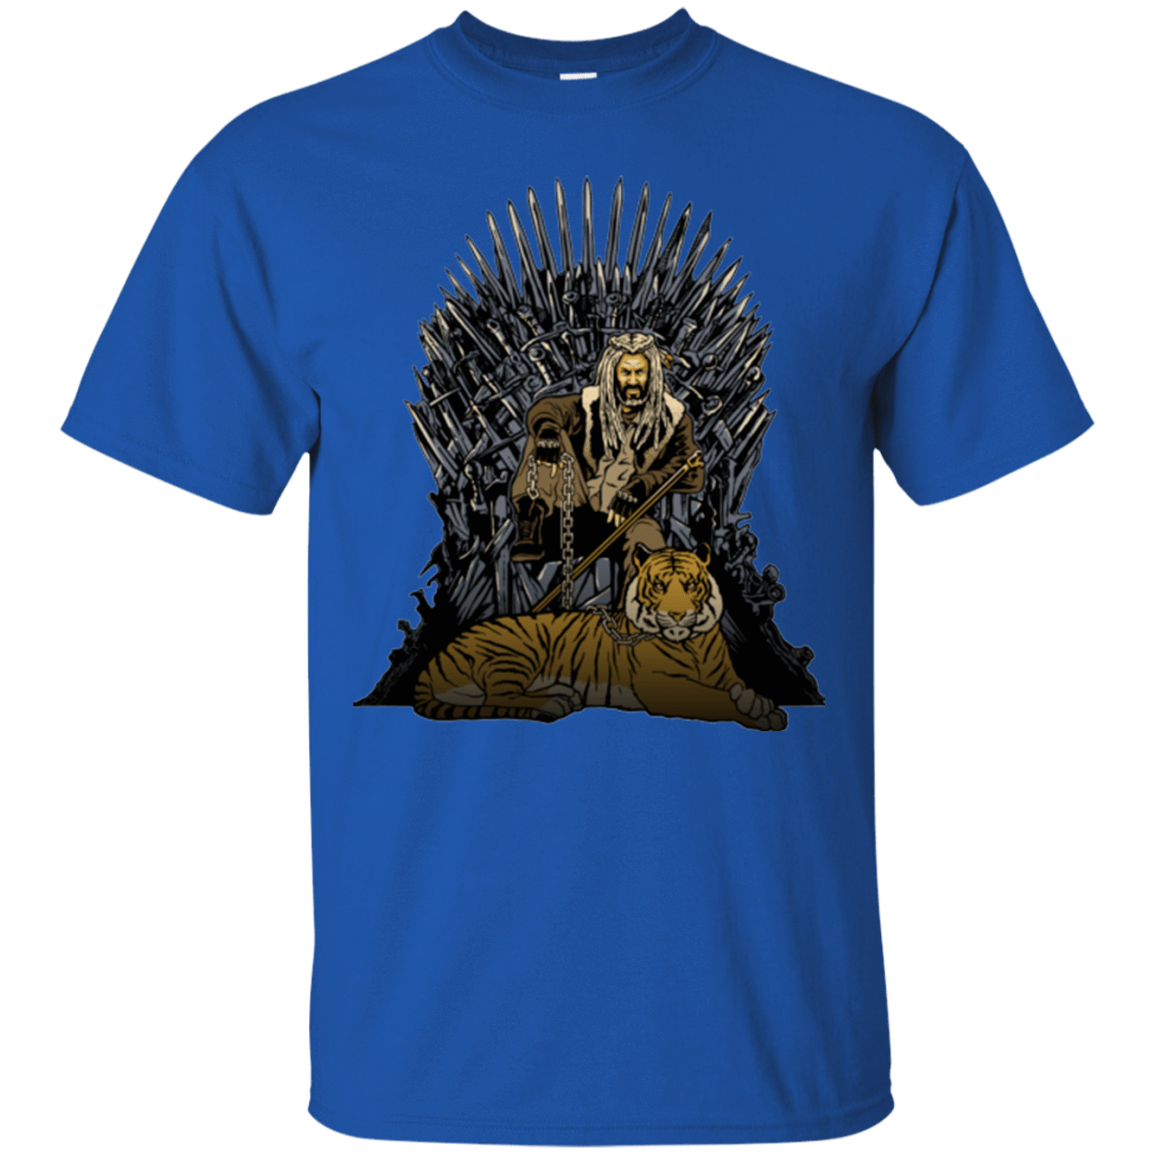 T-Shirts Royal / Small King and Tiger T-Shirt